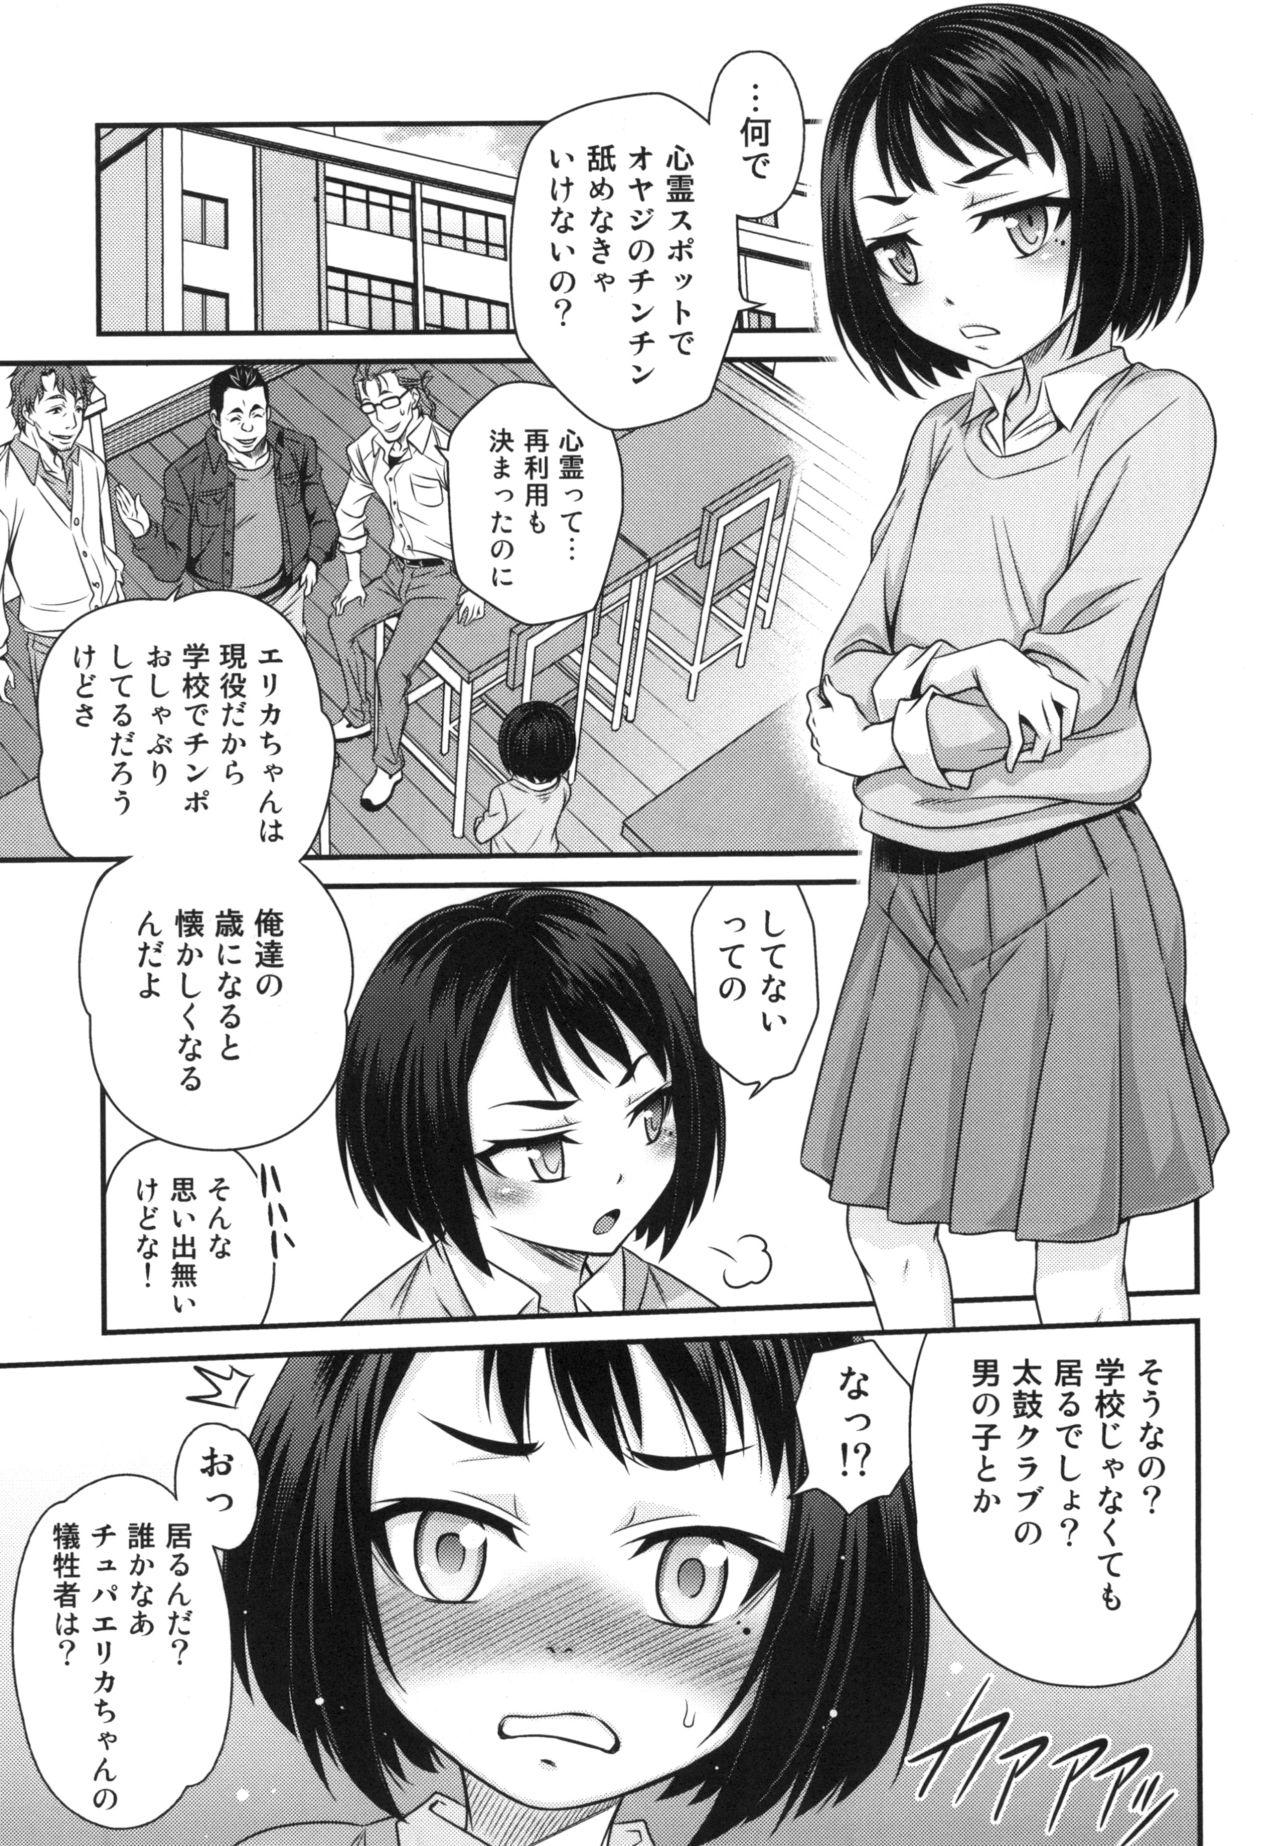 Food Erika no ChupaChupa Quest!! - Sakura quest Throat - Page 9